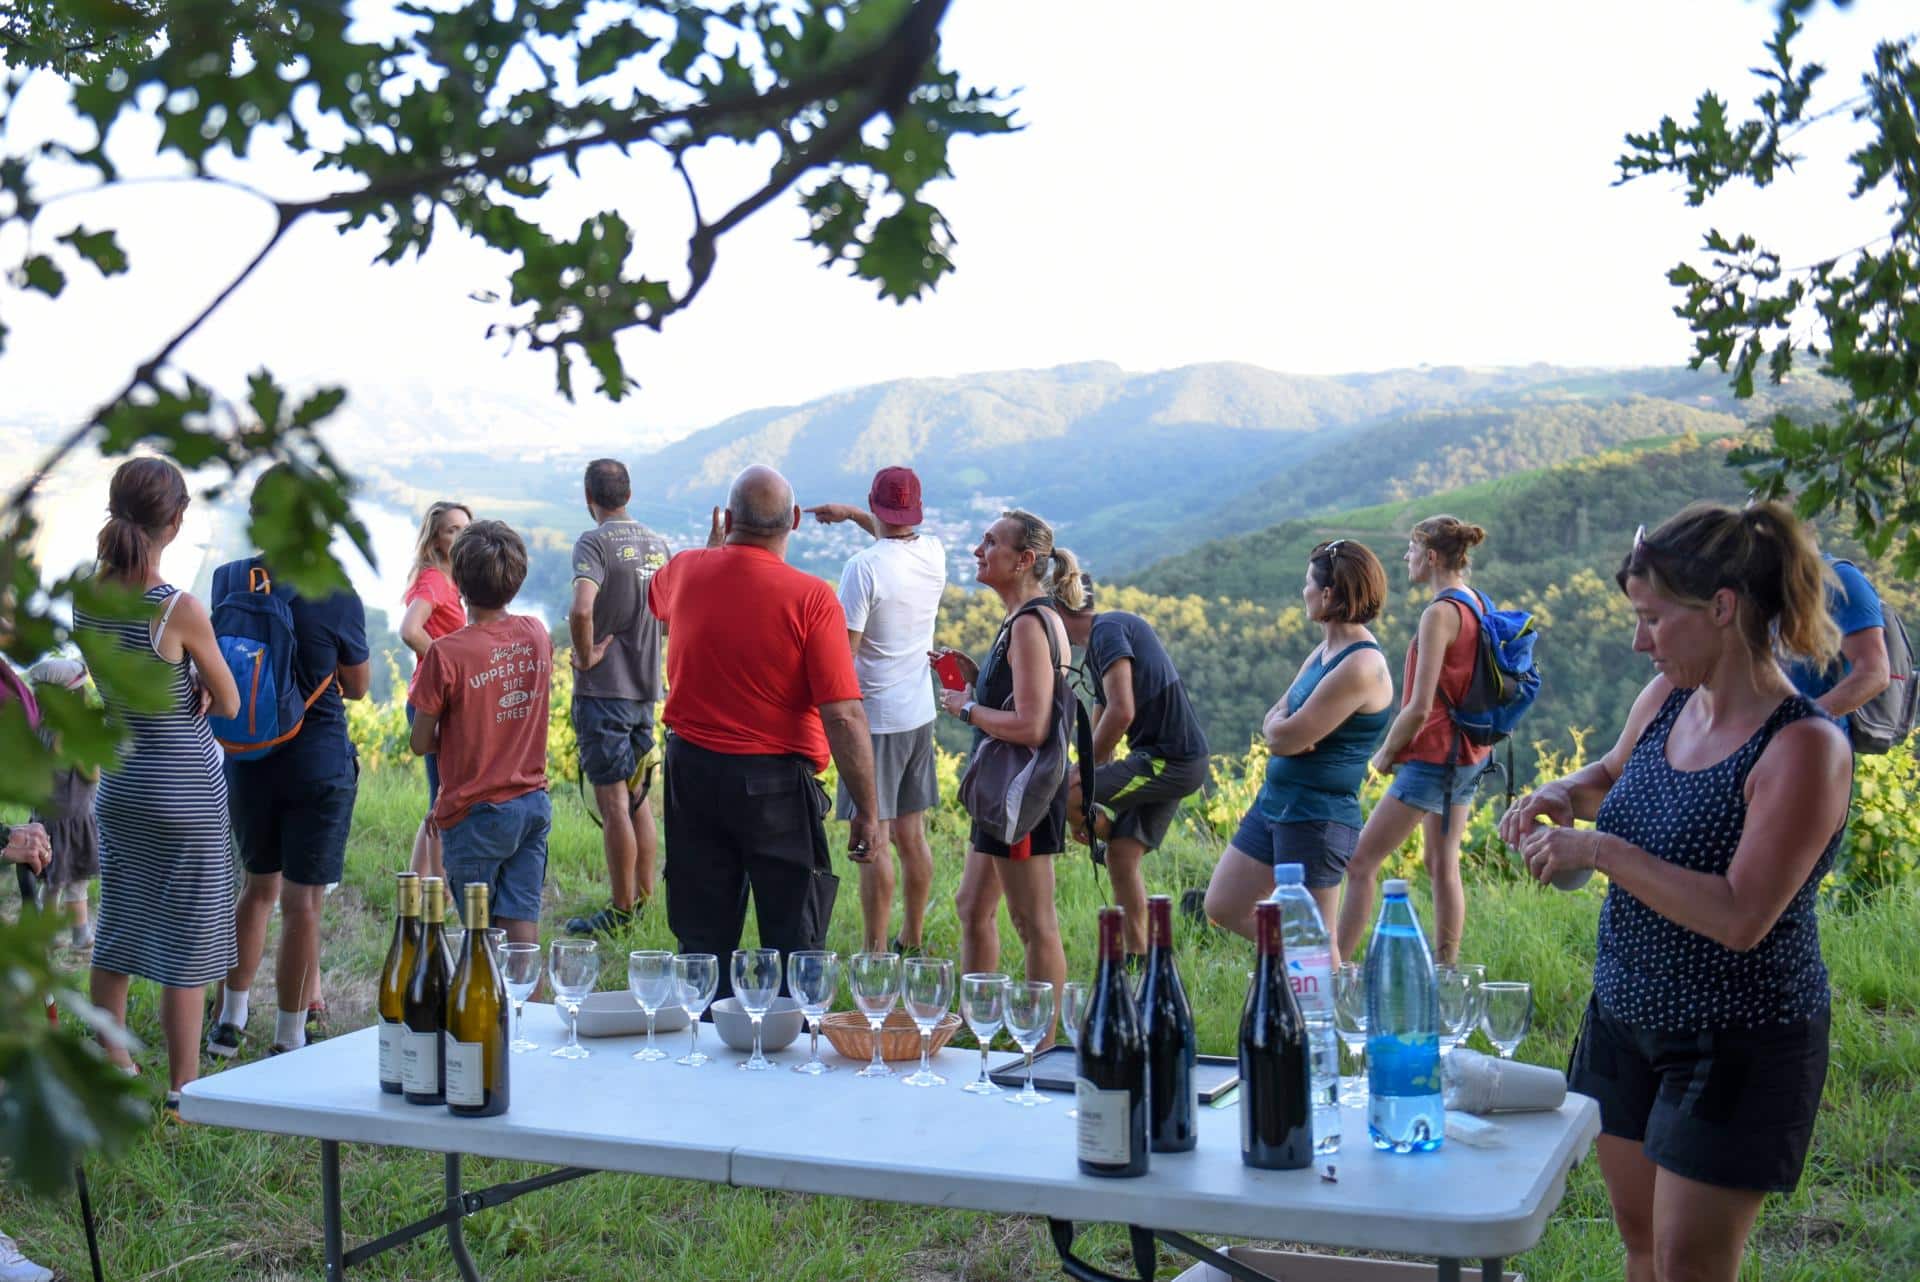 L’équipe d’API Event, basée à Hauterives dans la Drôme, s’occupe des offres pour les groupes et séminaires au sein de l’Office de Tourisme Porte de DrômArdèche. Son engagement envers la nature, l’authenticité, l’originalité, et la promotion du tourisme responsable sont au cœur de leur mission.